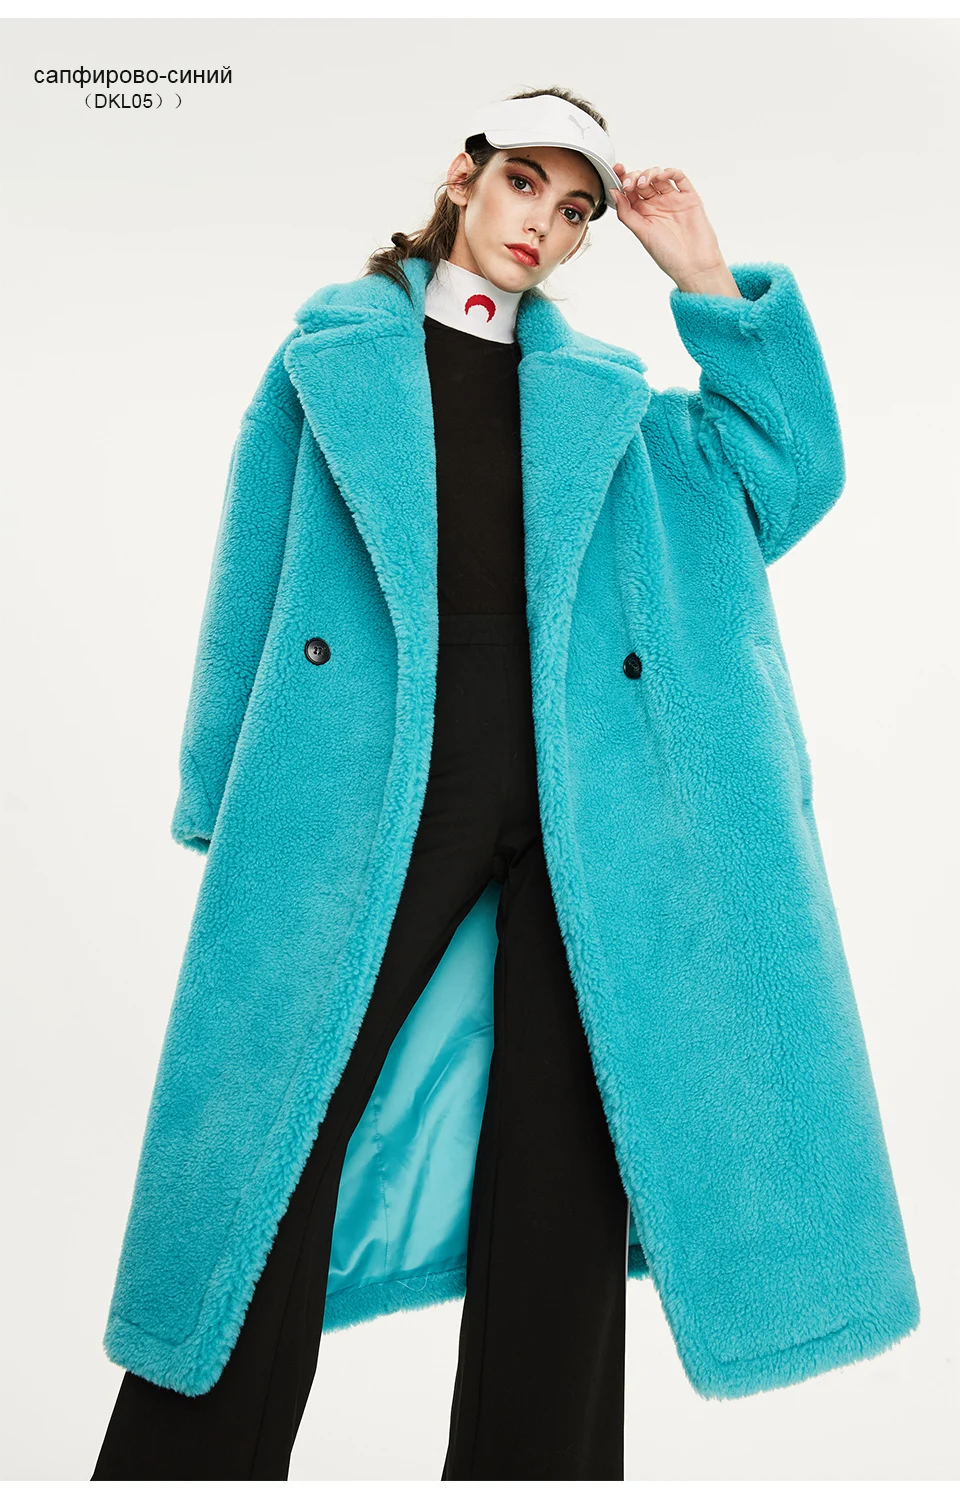 JAZZEVAR Зимнее новое поступление меховое пальто новое модное стильное свободная одежда длинное теплое зимная куртка K9063